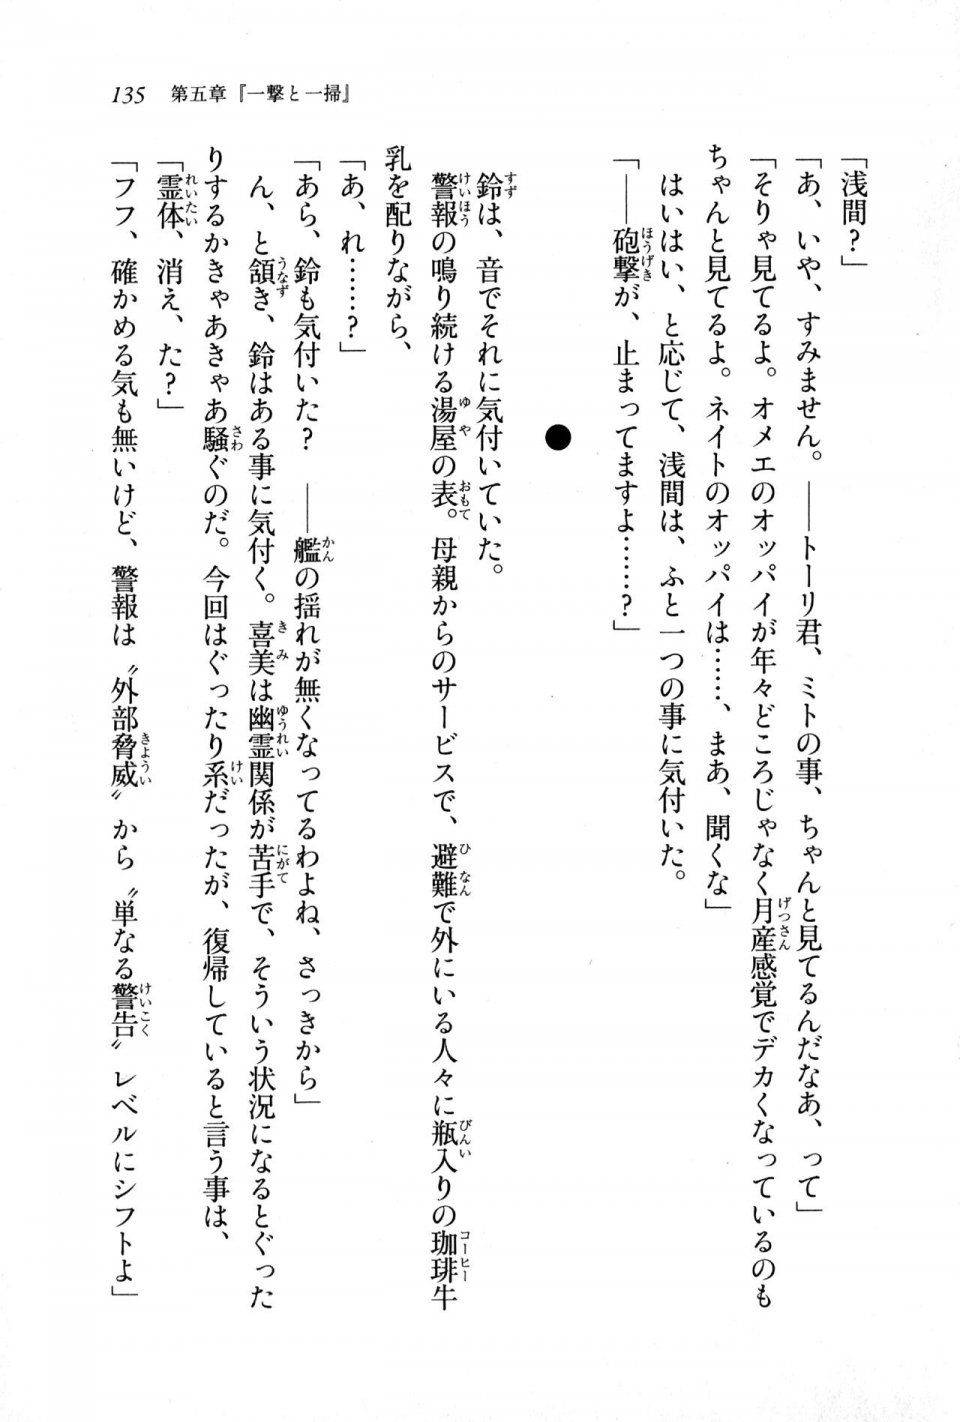 Kyoukai Senjou no Horizon LN Sidestory Vol 1 - Photo #133